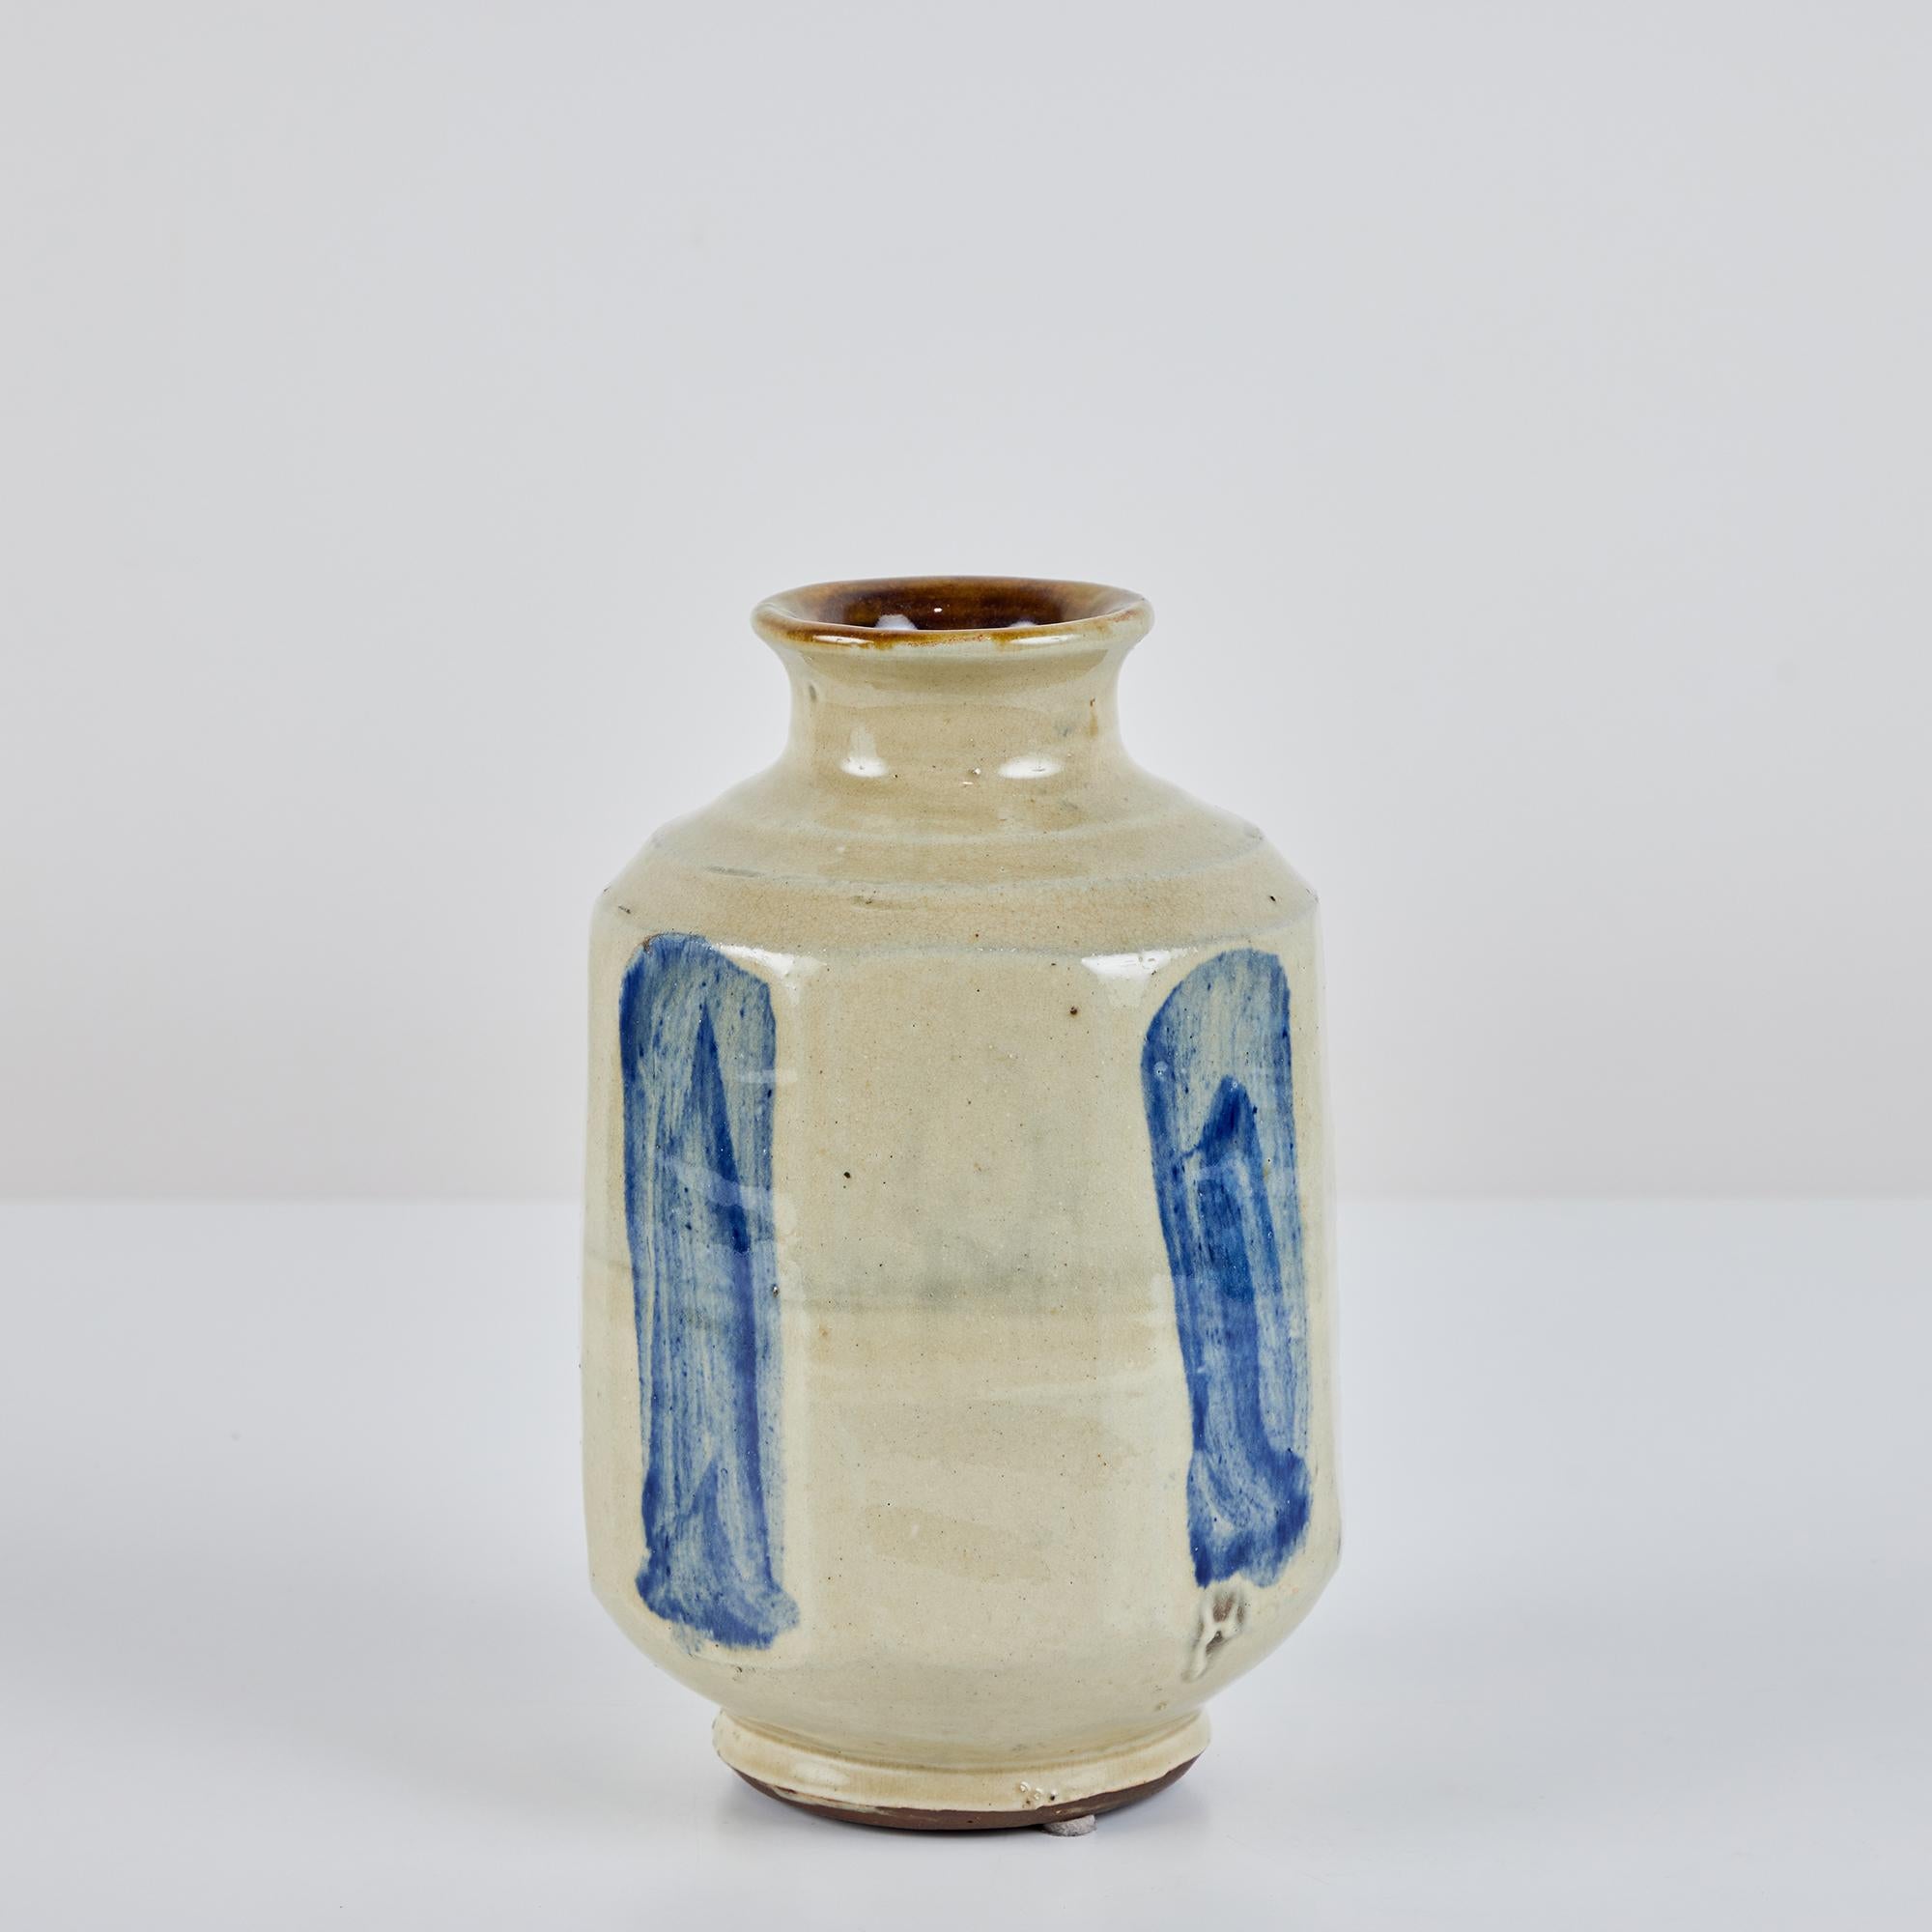 Eine längliche, achteckige Vase aus Studio-Keramik mit ausgestelltem Rand. Dieses Gefäß weist eine ganzflächige beige Glasur mit vier blauen Buschstrichen auf.
Auf der Unterseite signiert.

Abmessungen
5,5